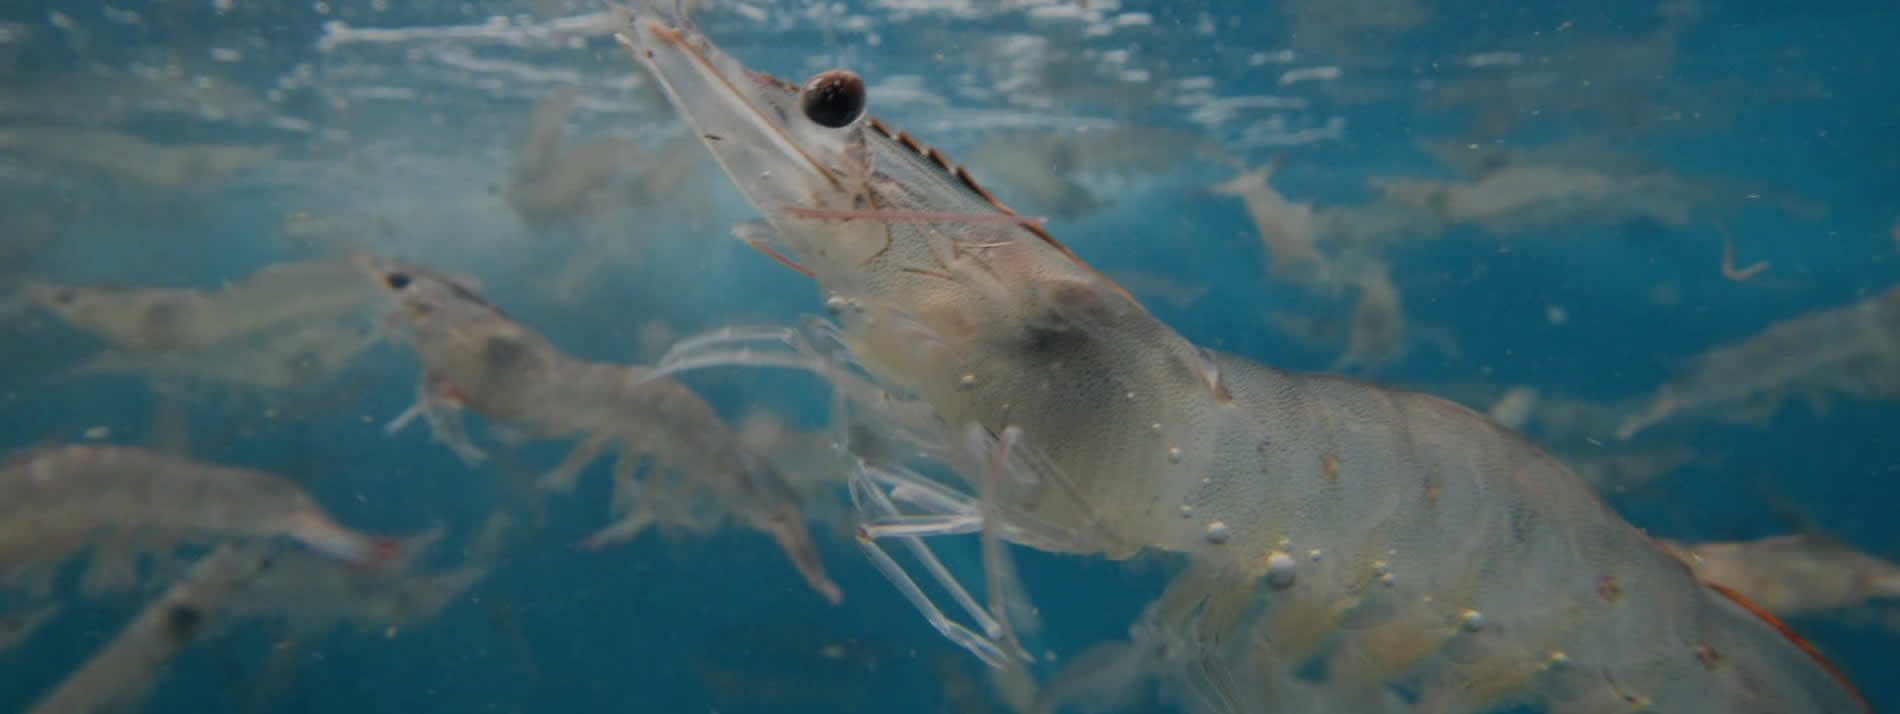 underwater shrimp naturalshrimp